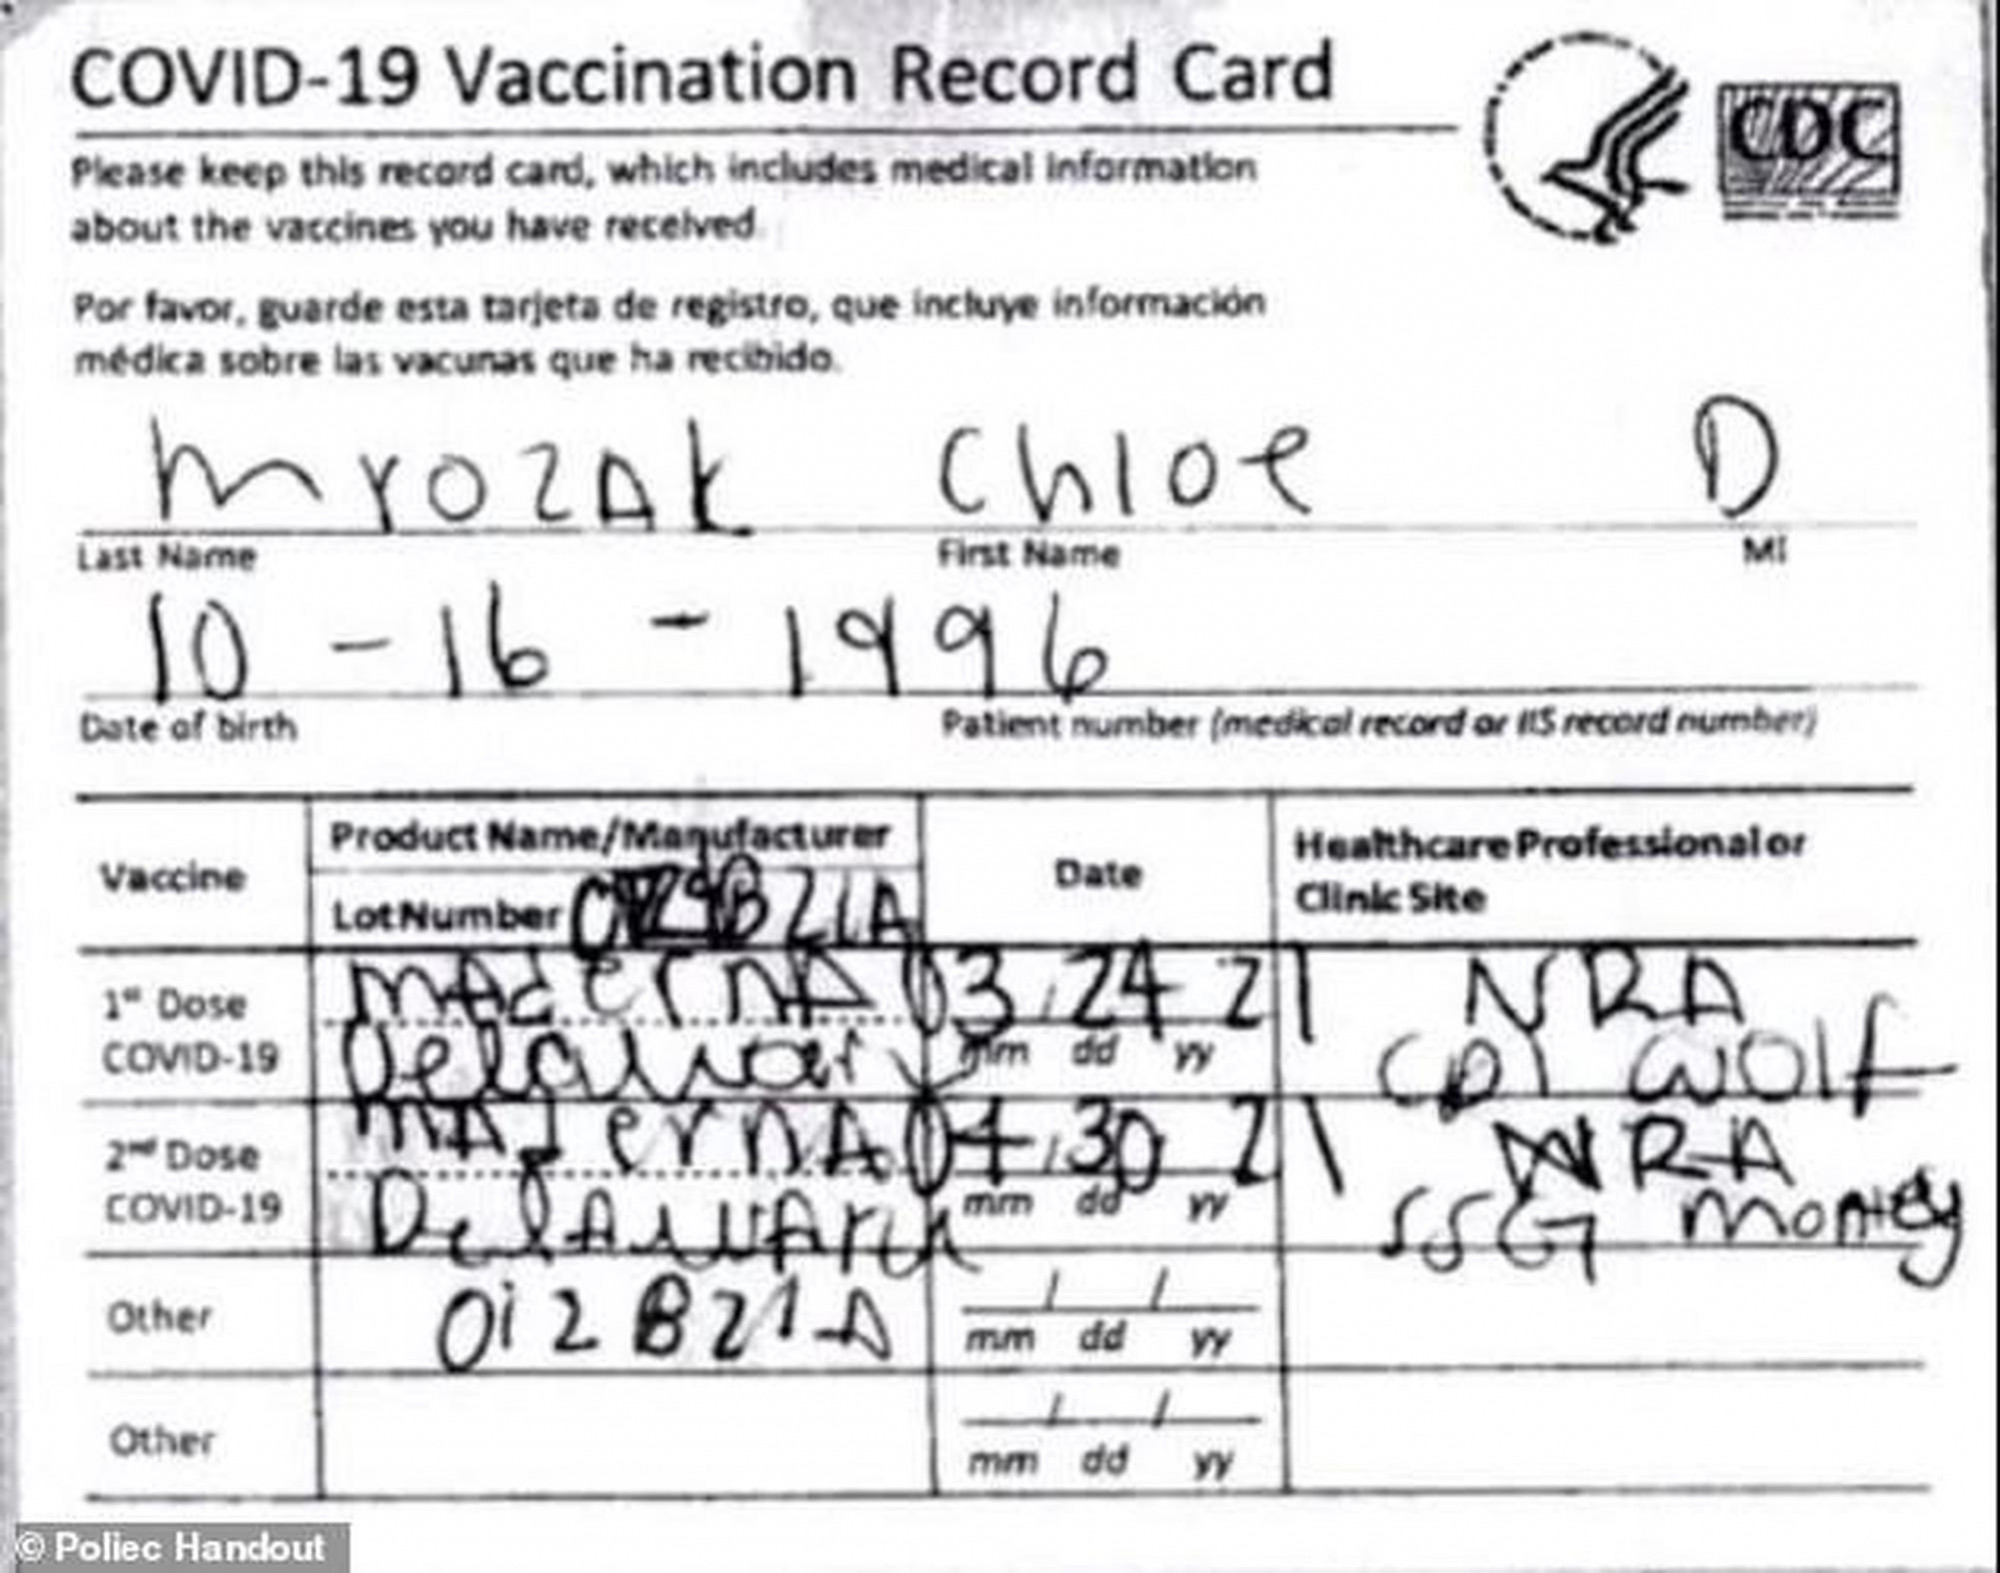 Thẻ xác nhận đã tiêm vắc xin giả mà cô Mrozak sử dụng, trong đó tên vắc xin Moderna đã bị viết sai thành Maderna - Ảnh: Hawaii Police